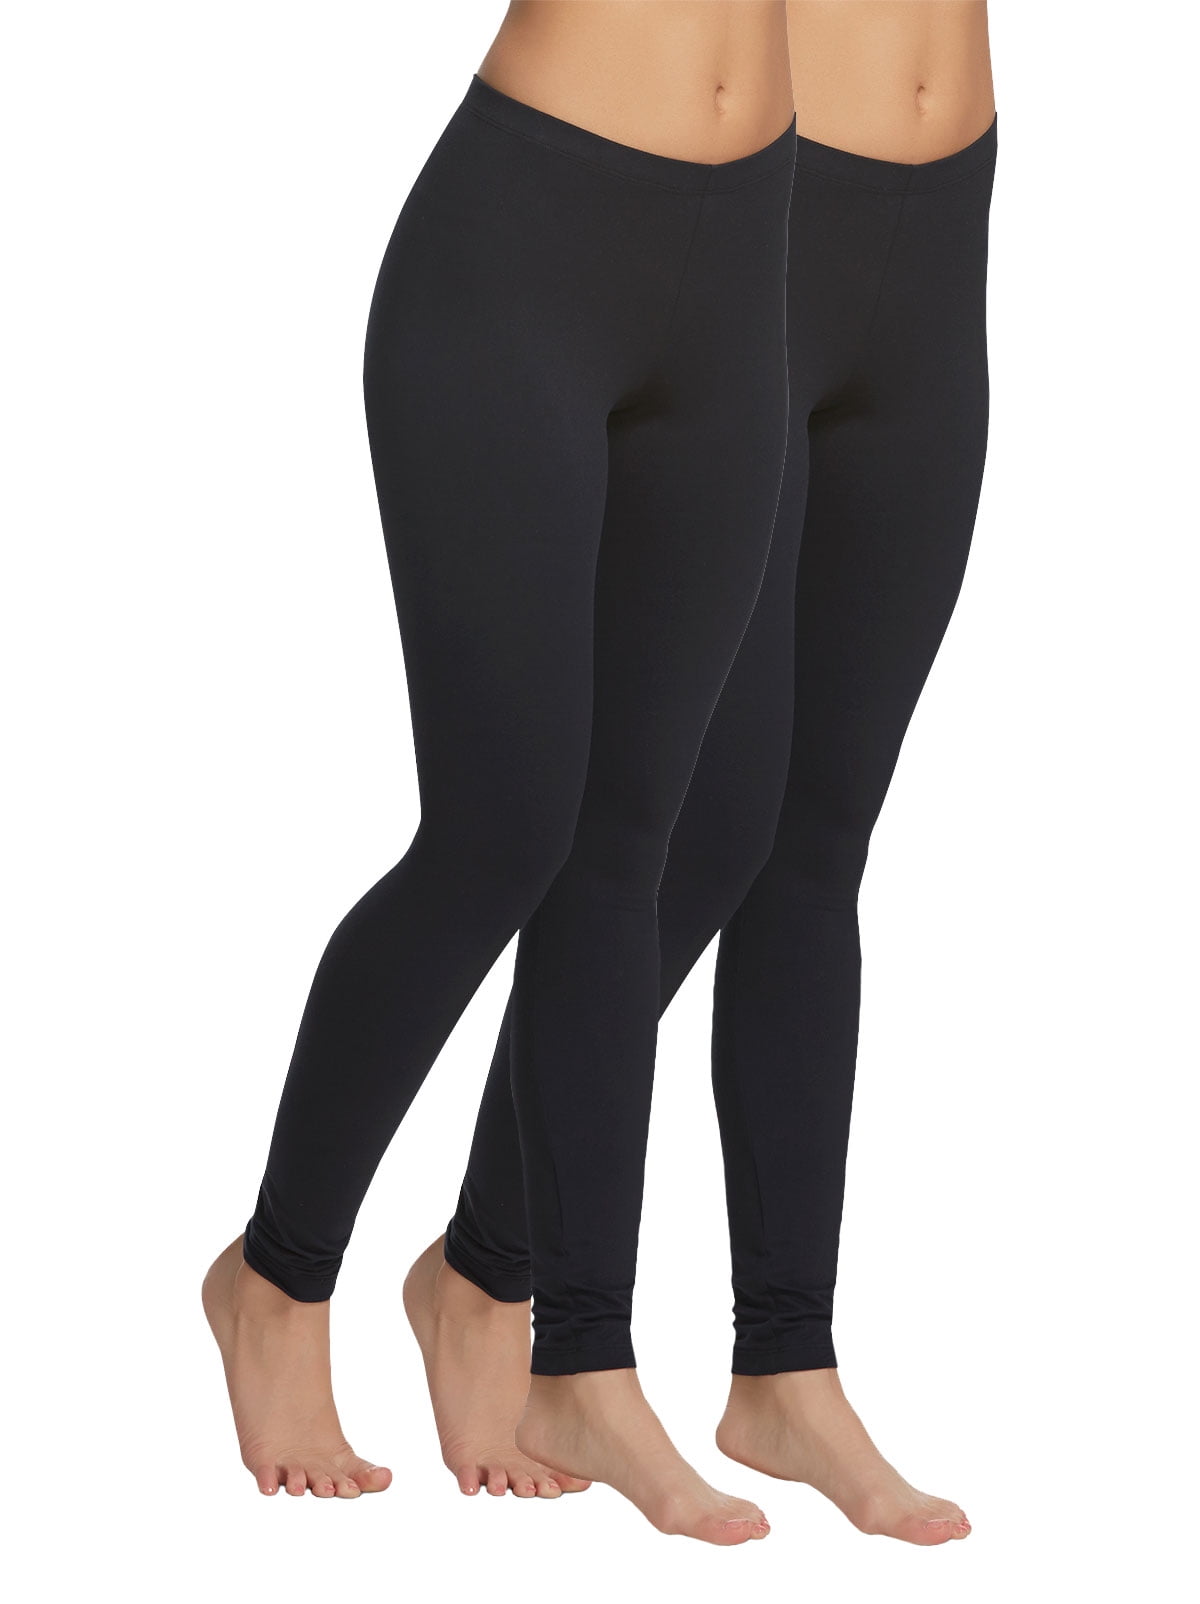 Felina Velvety Super Soft Lightweight Leggings For Women - Yoga Pants -  (2-Pack) (Black, X-Large)